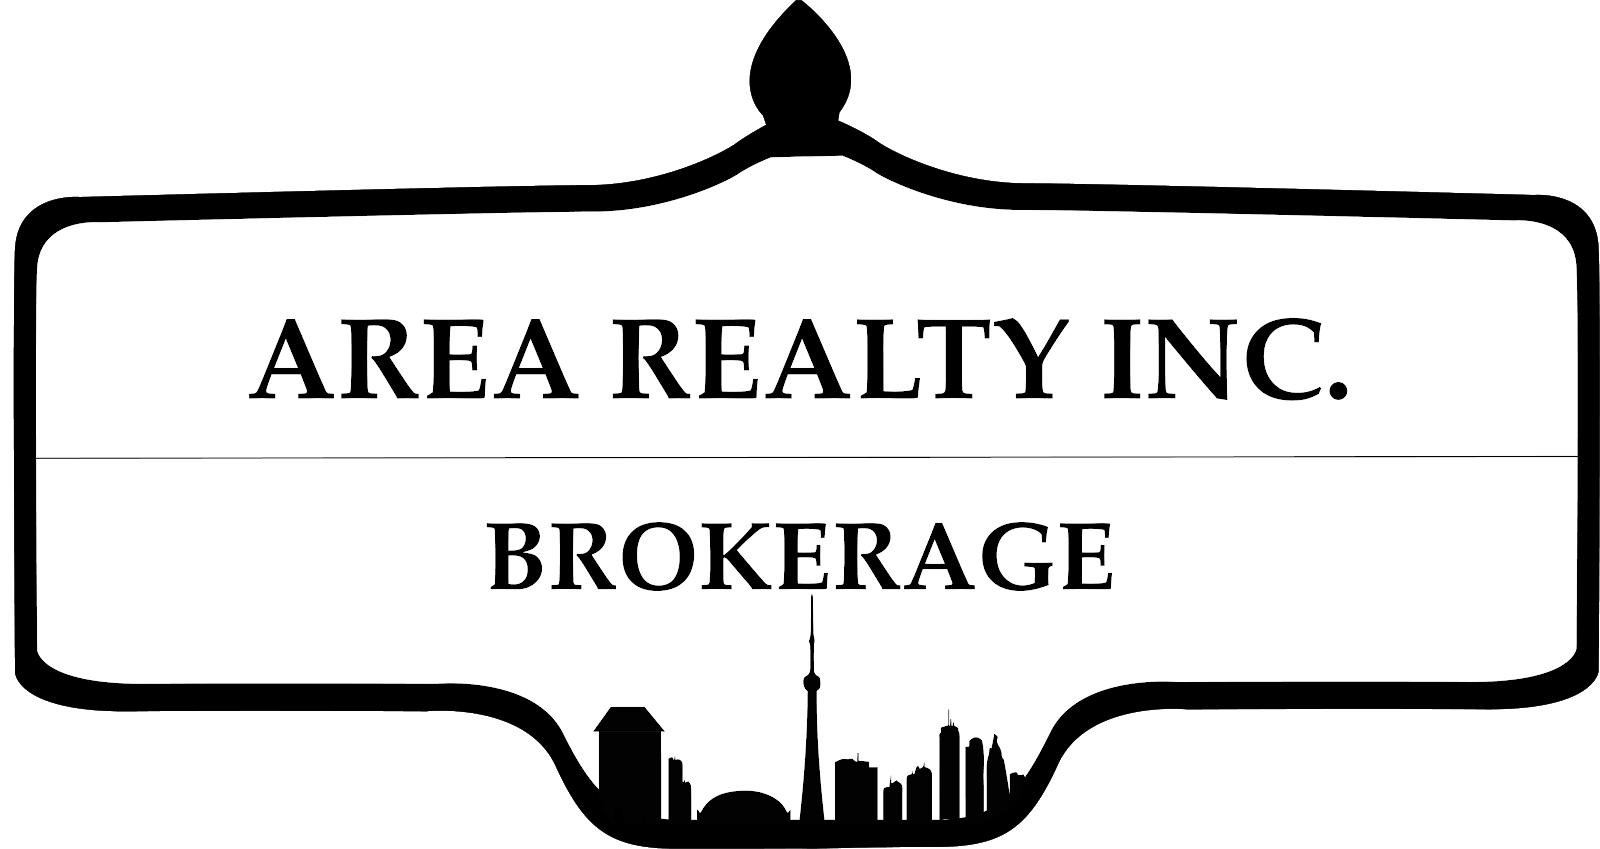 Area Realty Inc. Brokerage